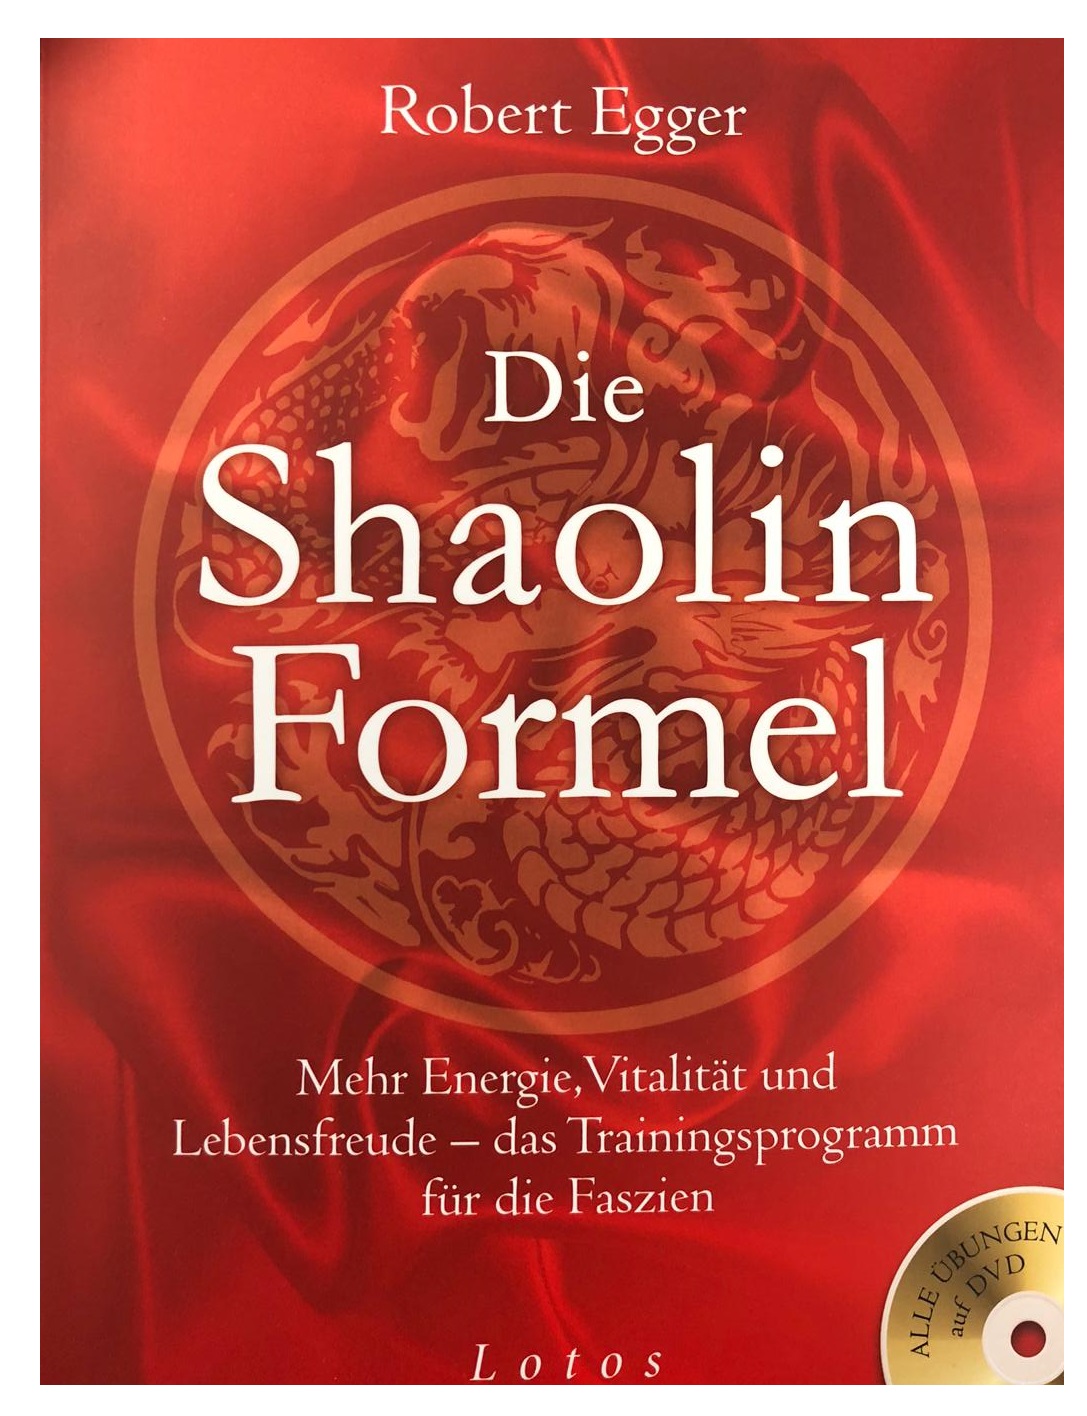 Die Shaolin-Formel (inkl. DVD) (Egger, Robert)